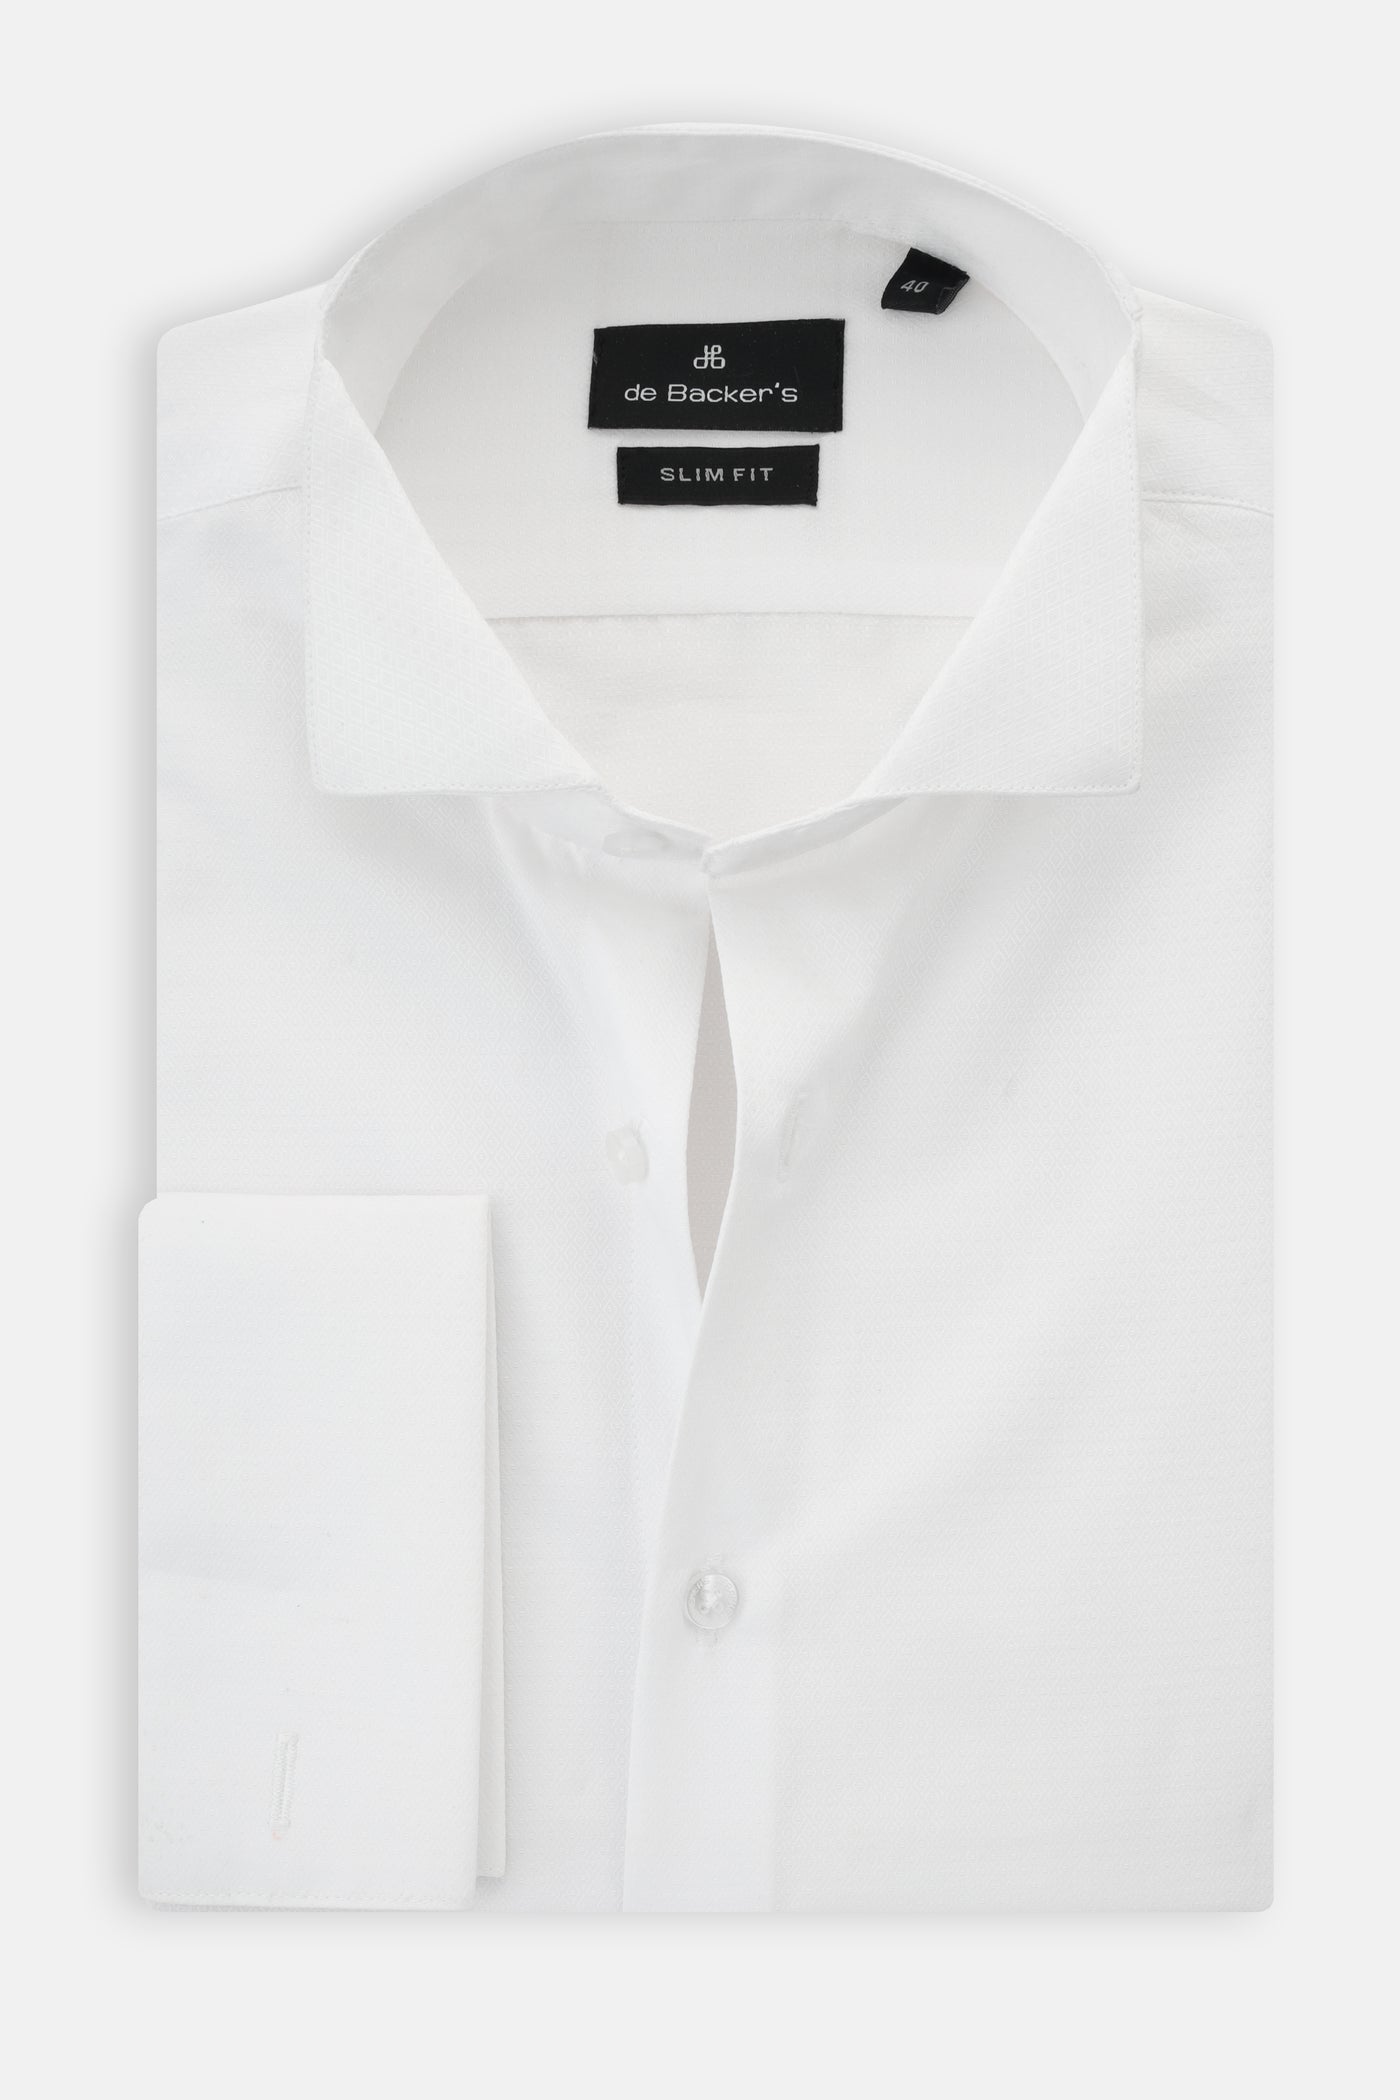 Jacquard Patterned White Wingtip Shirt